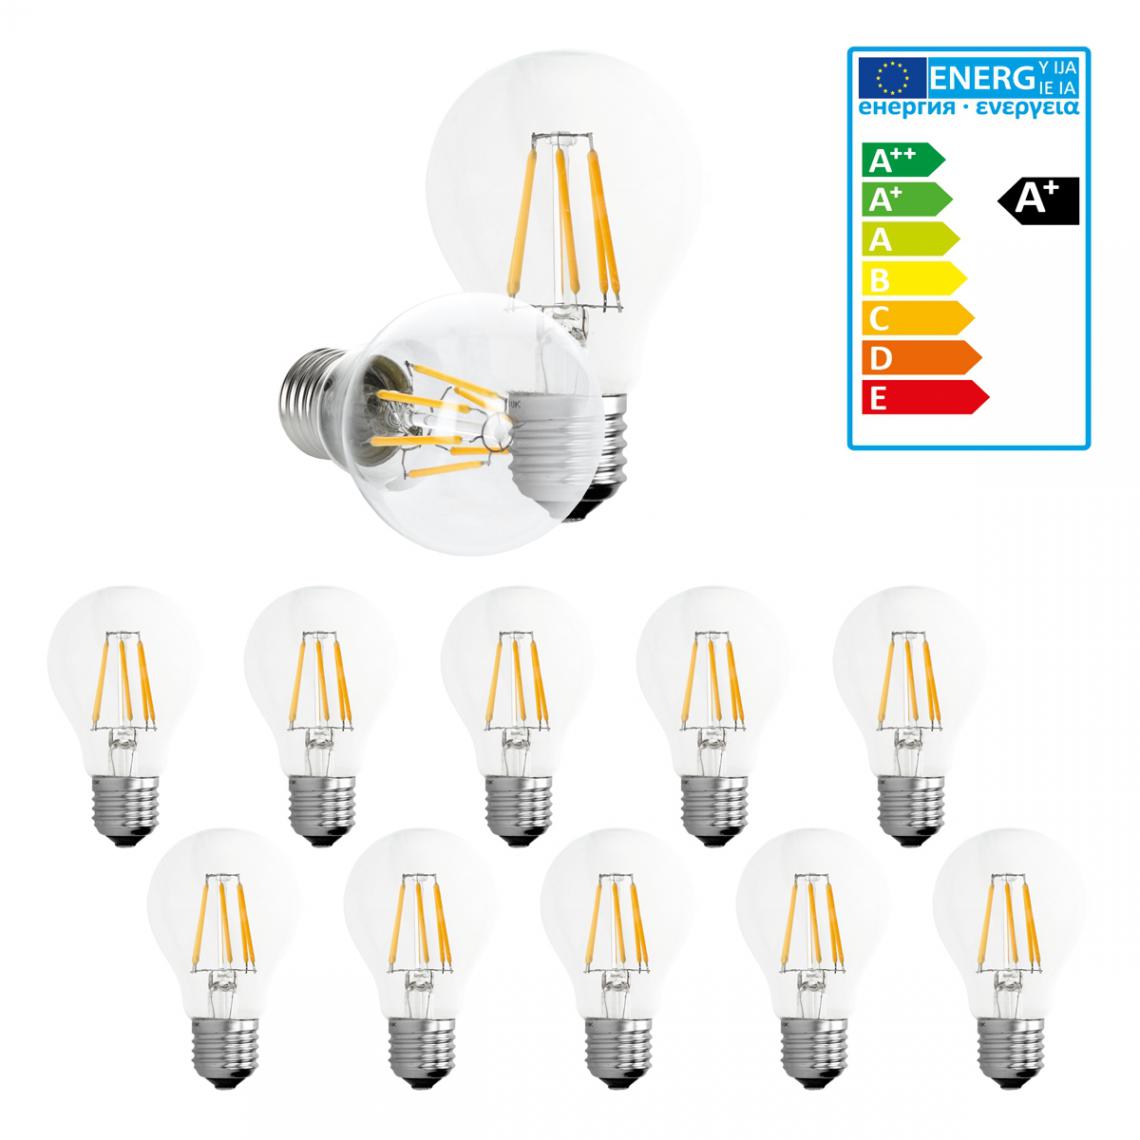 Ecd Germany - ECD Germany 10 x LED Filament de l'ampoule E27 Classique Edison 6W 612 lumens angle de faisceau de 120 ° AC 220-240 reste caché et remplace 40W Lampe incandescent à lumière blanche chaude - Ampoules LED